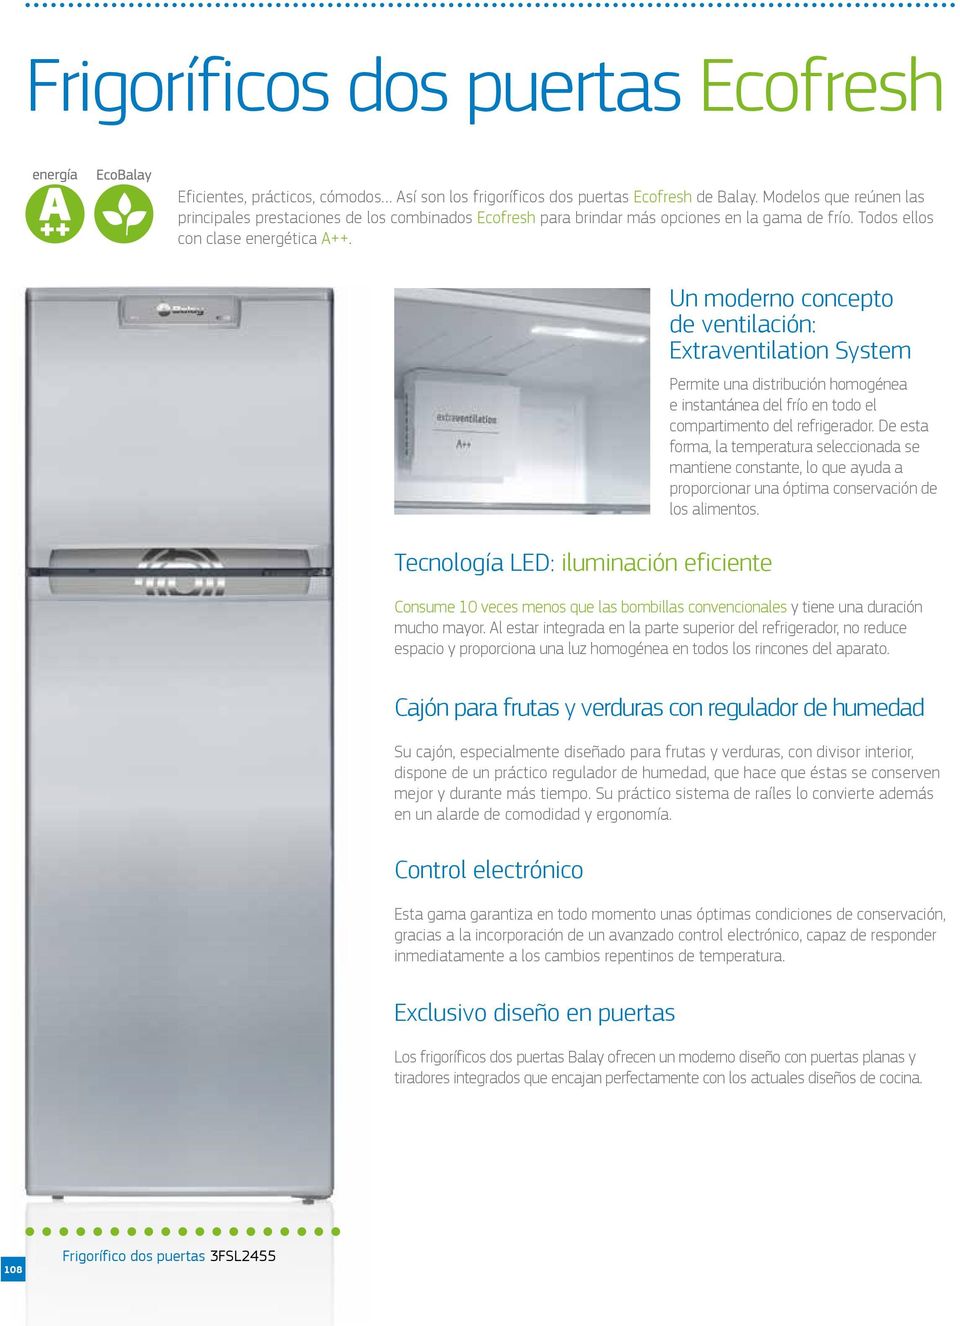 Tecnología LED: iluminación eficiente Un moderno concepto de ventilación: Extraventilation System Permite una distribución homogénea e instantánea del frío en todo el compartimento del refrigerador.